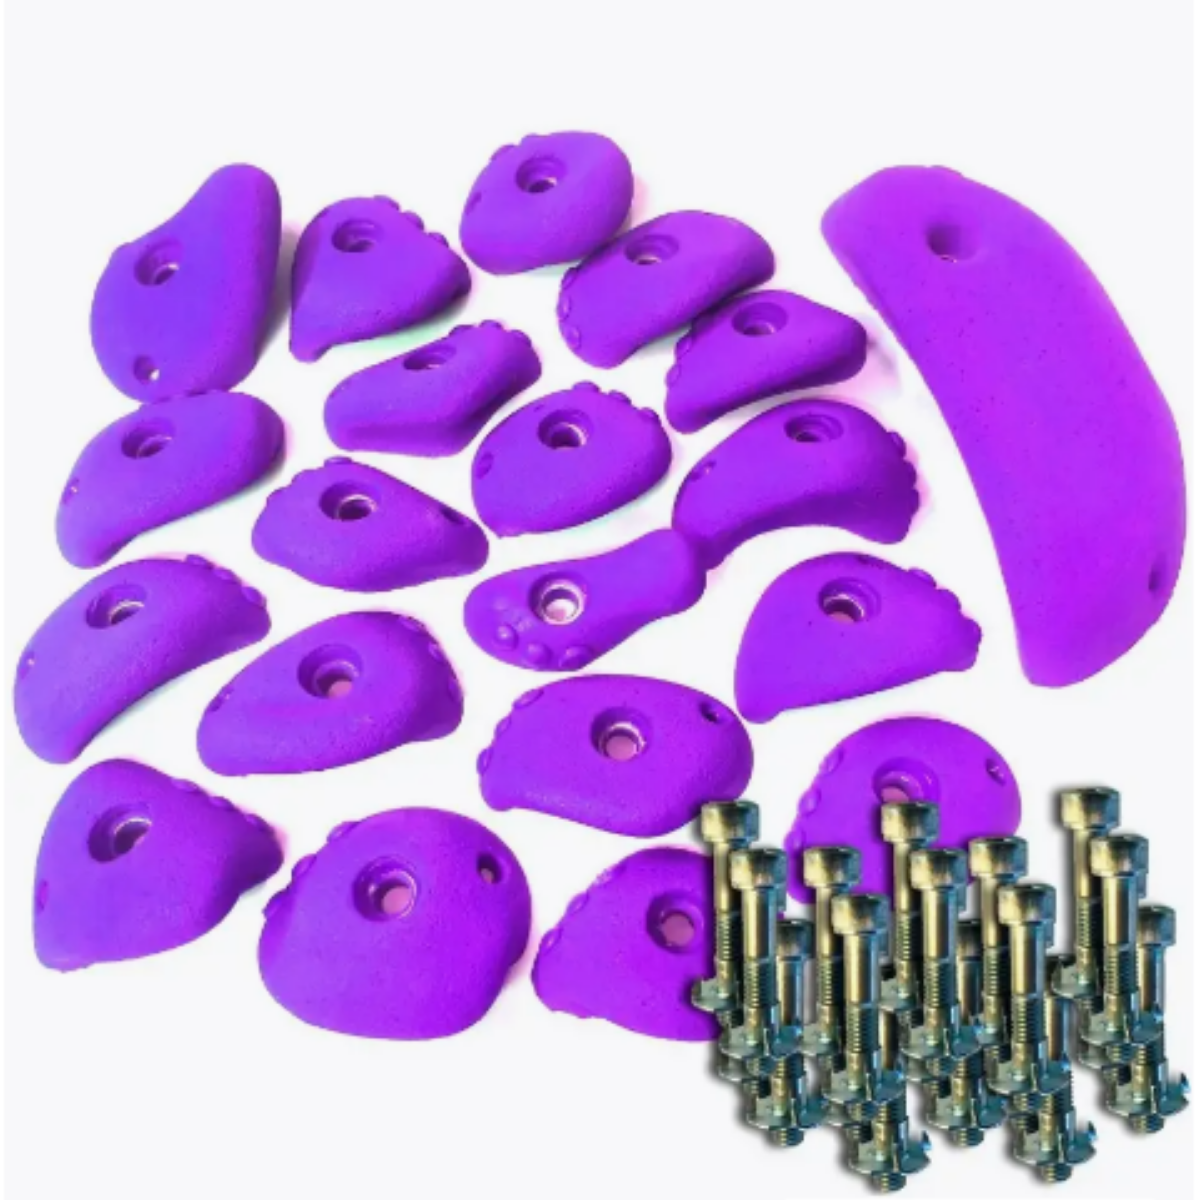 Зацепы для скалодрома Скалодромы Жужа сет Dot фиолетовые 20 шт с крепежом